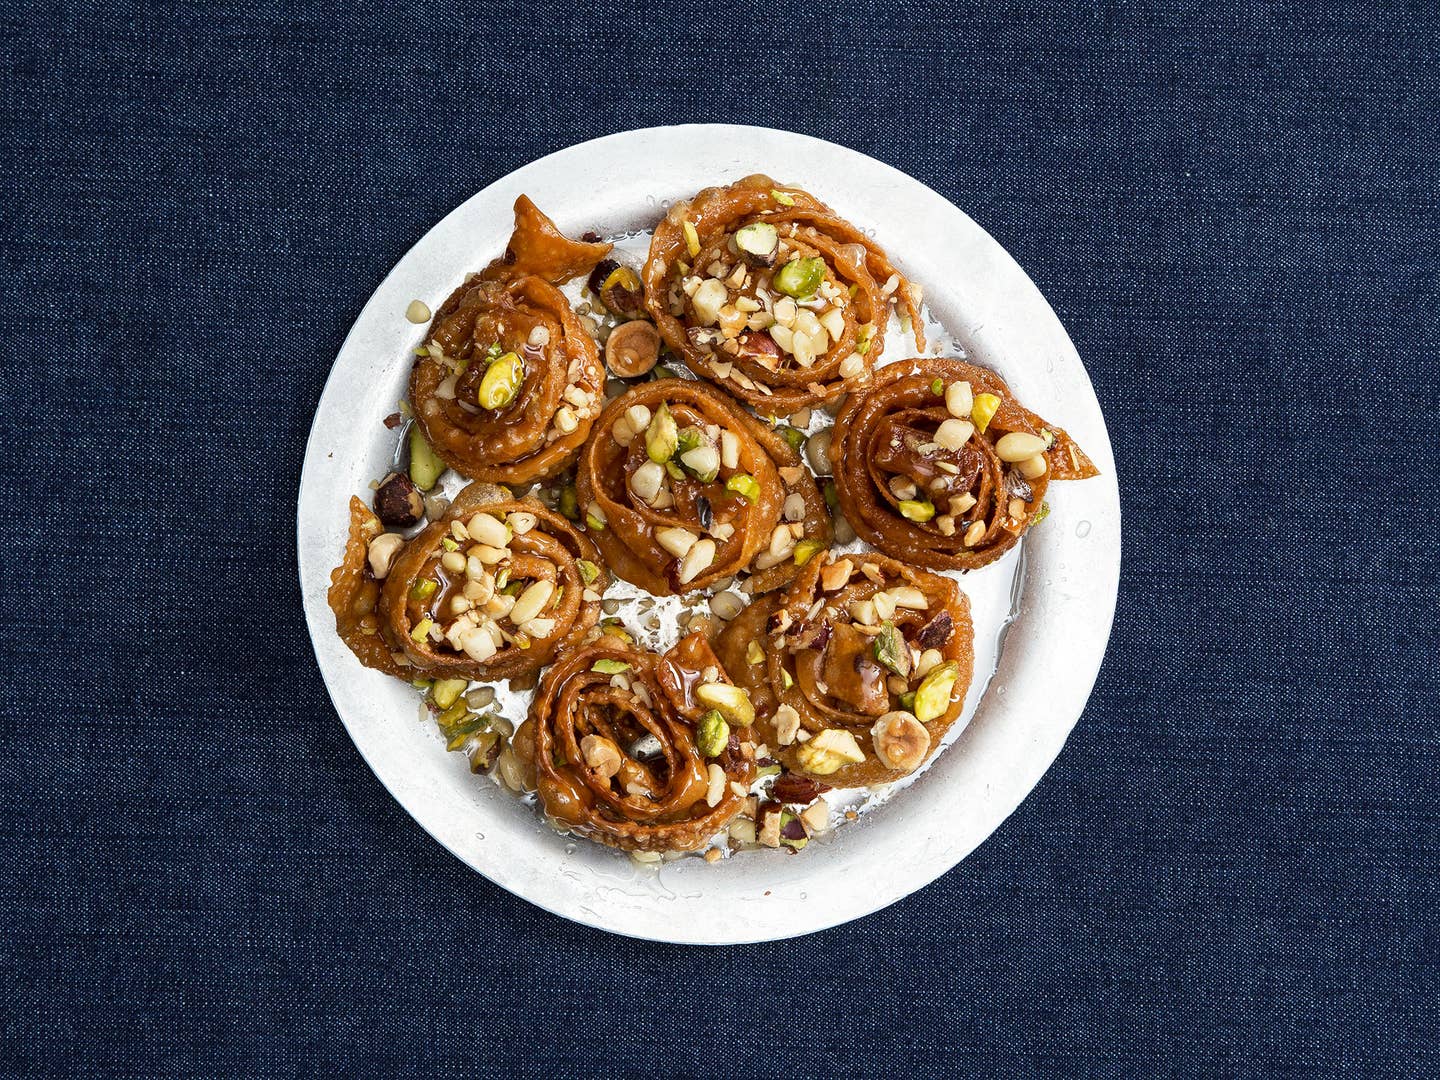 35 Phenomenal Pine Nut Recipes